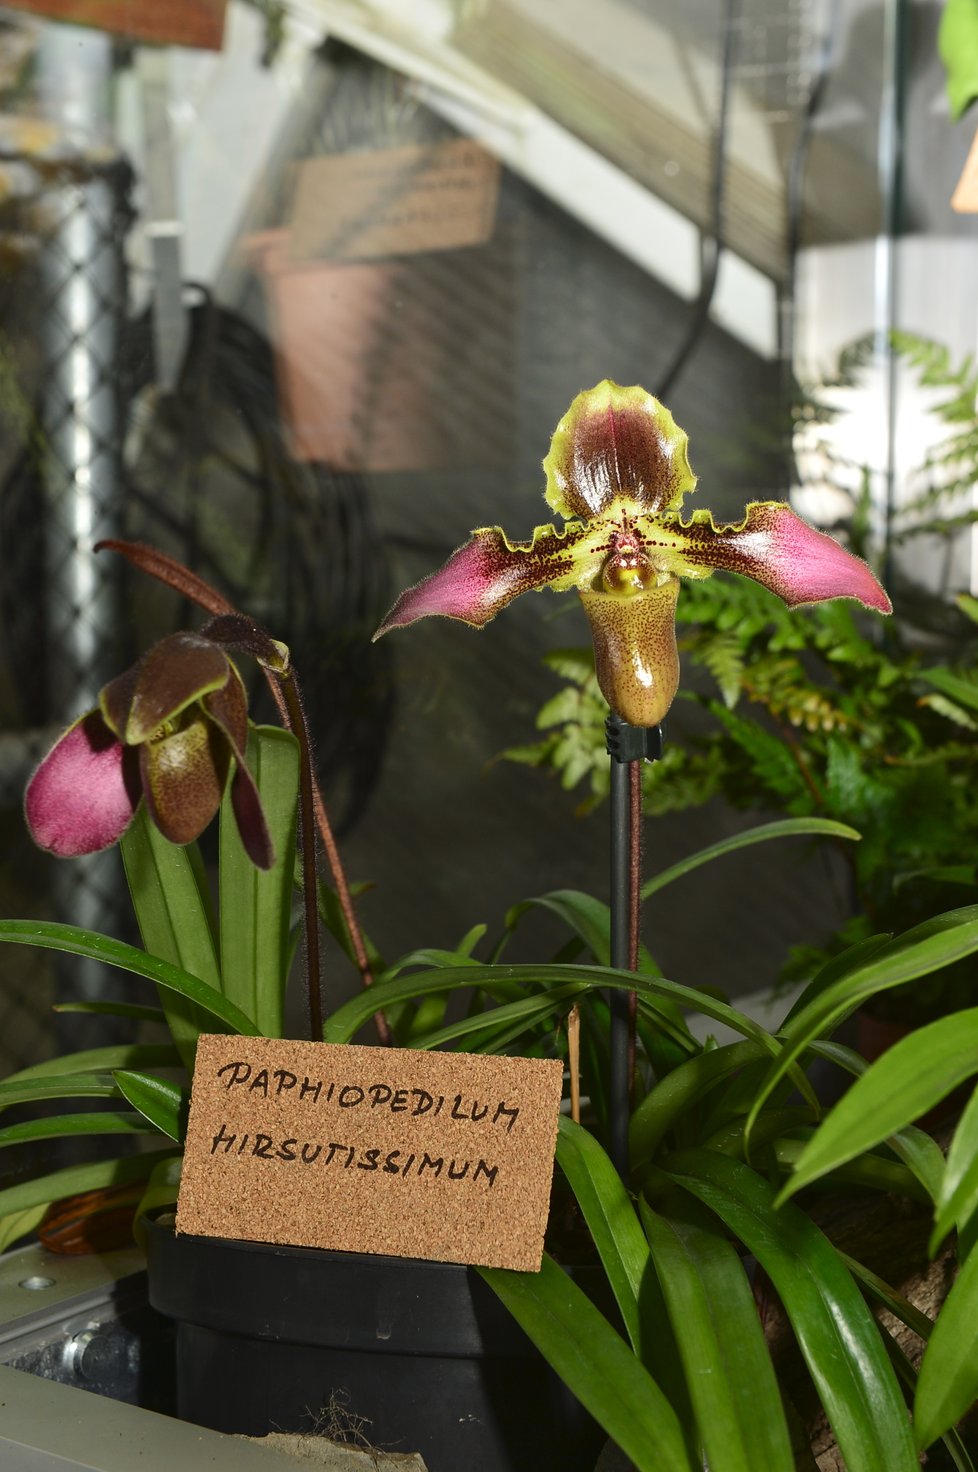 Chlupatá orchidej Paphieopedilum Hirsuti je typická svým porostem i zabarvením, ve kterém lze při troše fantazie rozeznat obrysy tváře.